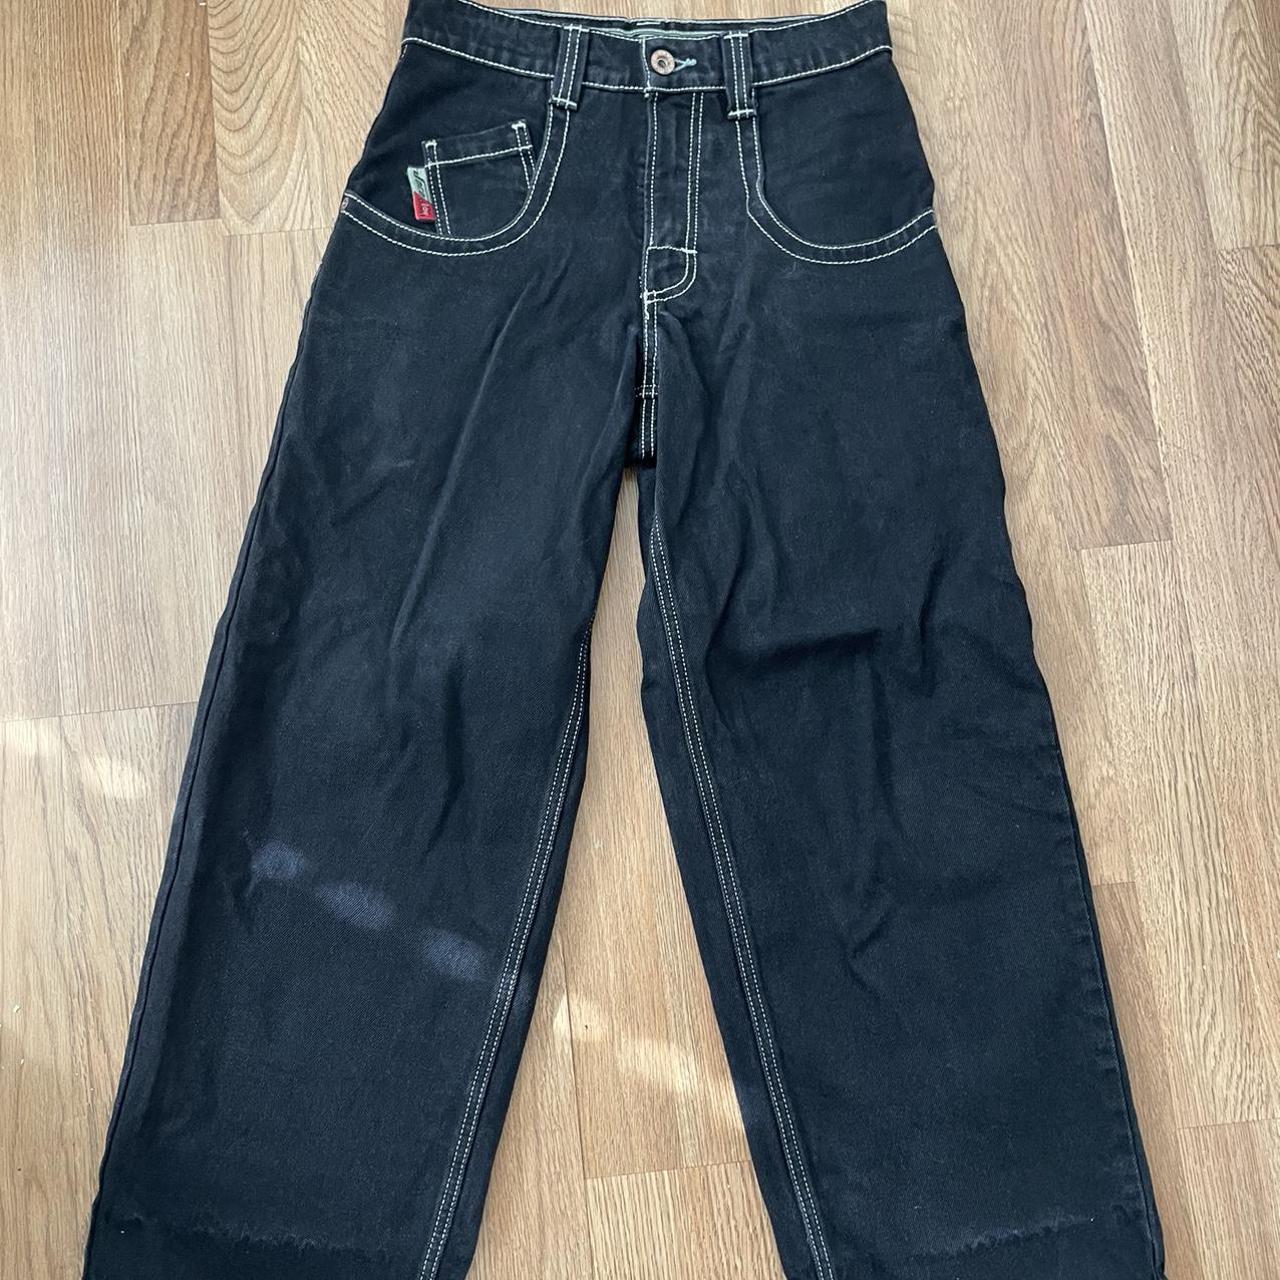 jnco lowdown 20 inch jeans 28x30 -like new, only... - Depop